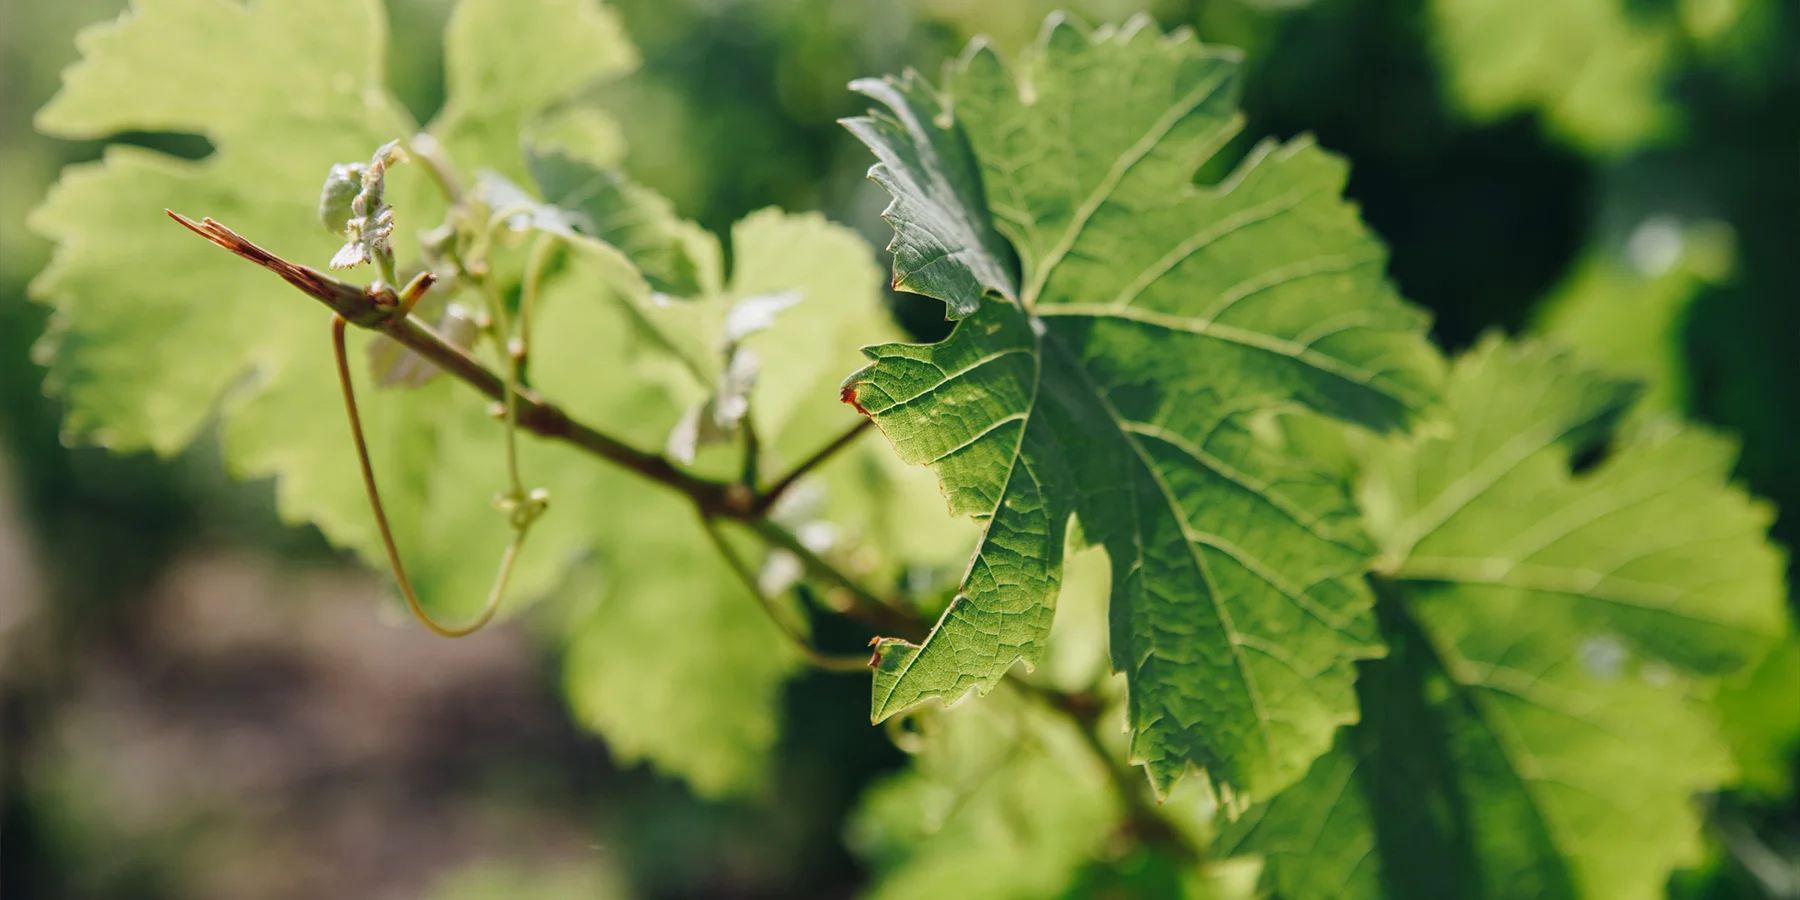 Vine leaf